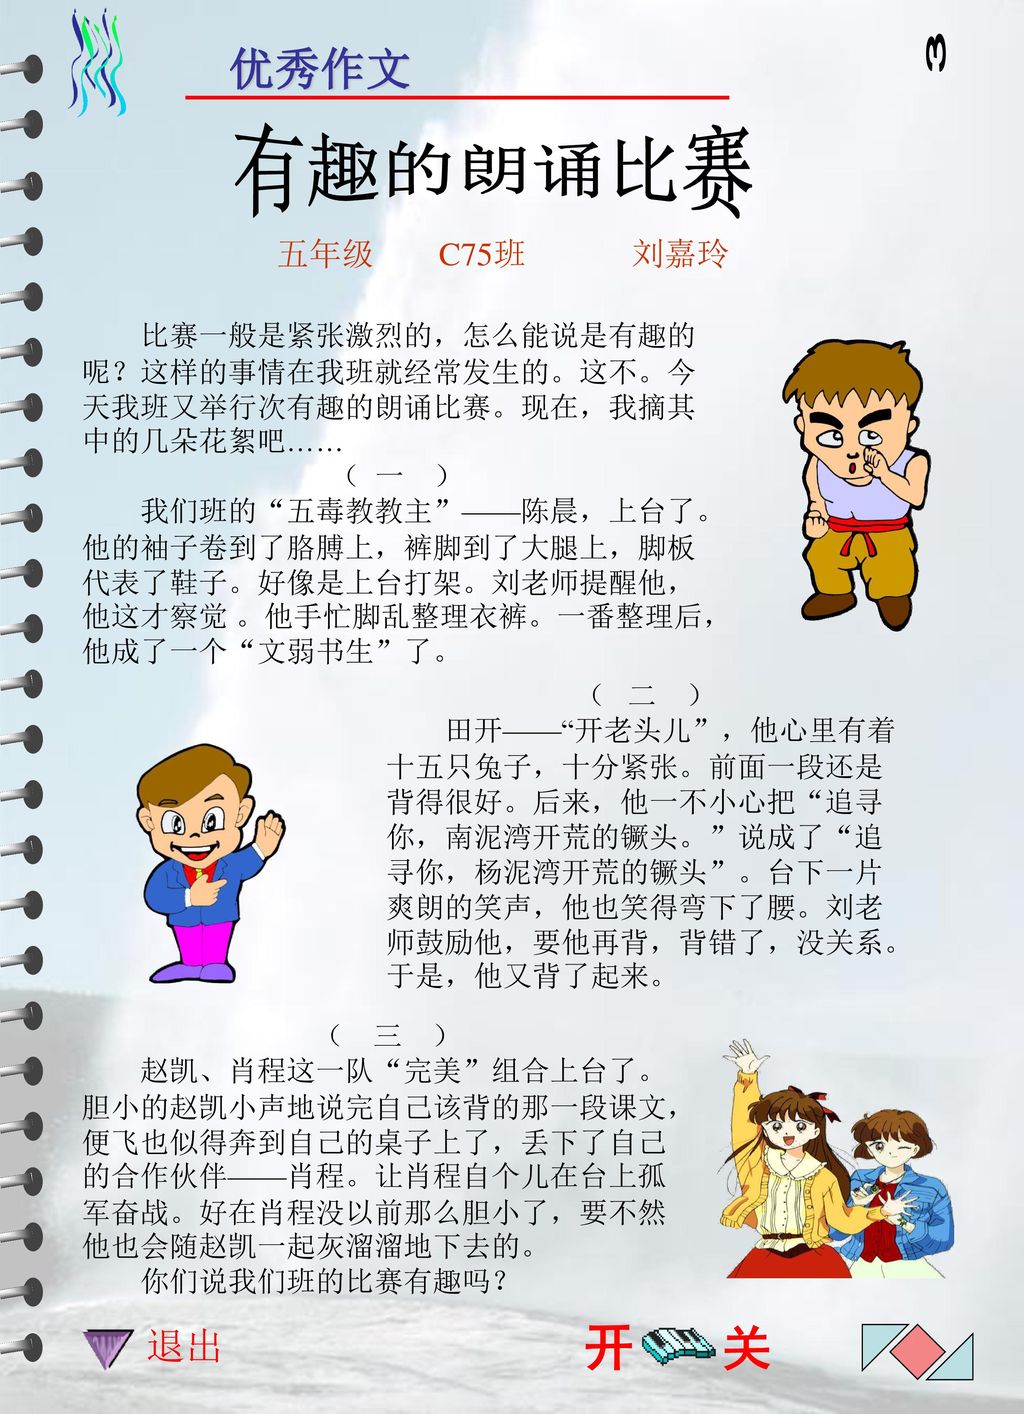 川 3 有趣的朗诵比赛 开 关 优秀作文 退出 五年级 C75班 刘嘉玲